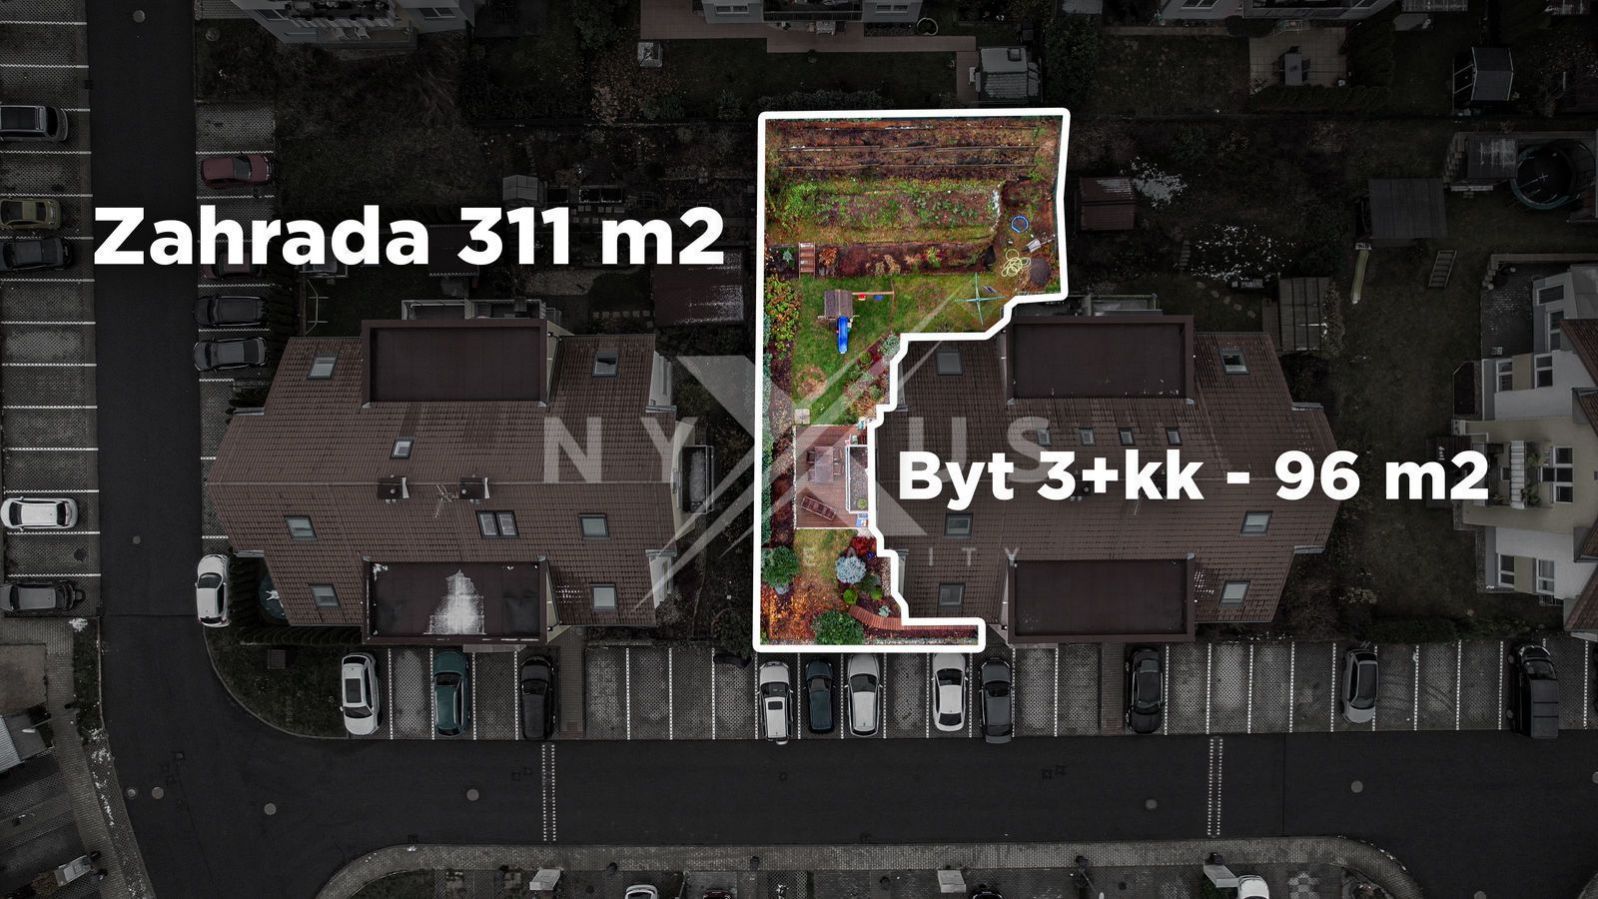 Prodej bytu 3+kk - 96 m2 + zahrada 311 m2 a 2 parkovací stání, Smetanova - Jinočany, obrázek č. 3